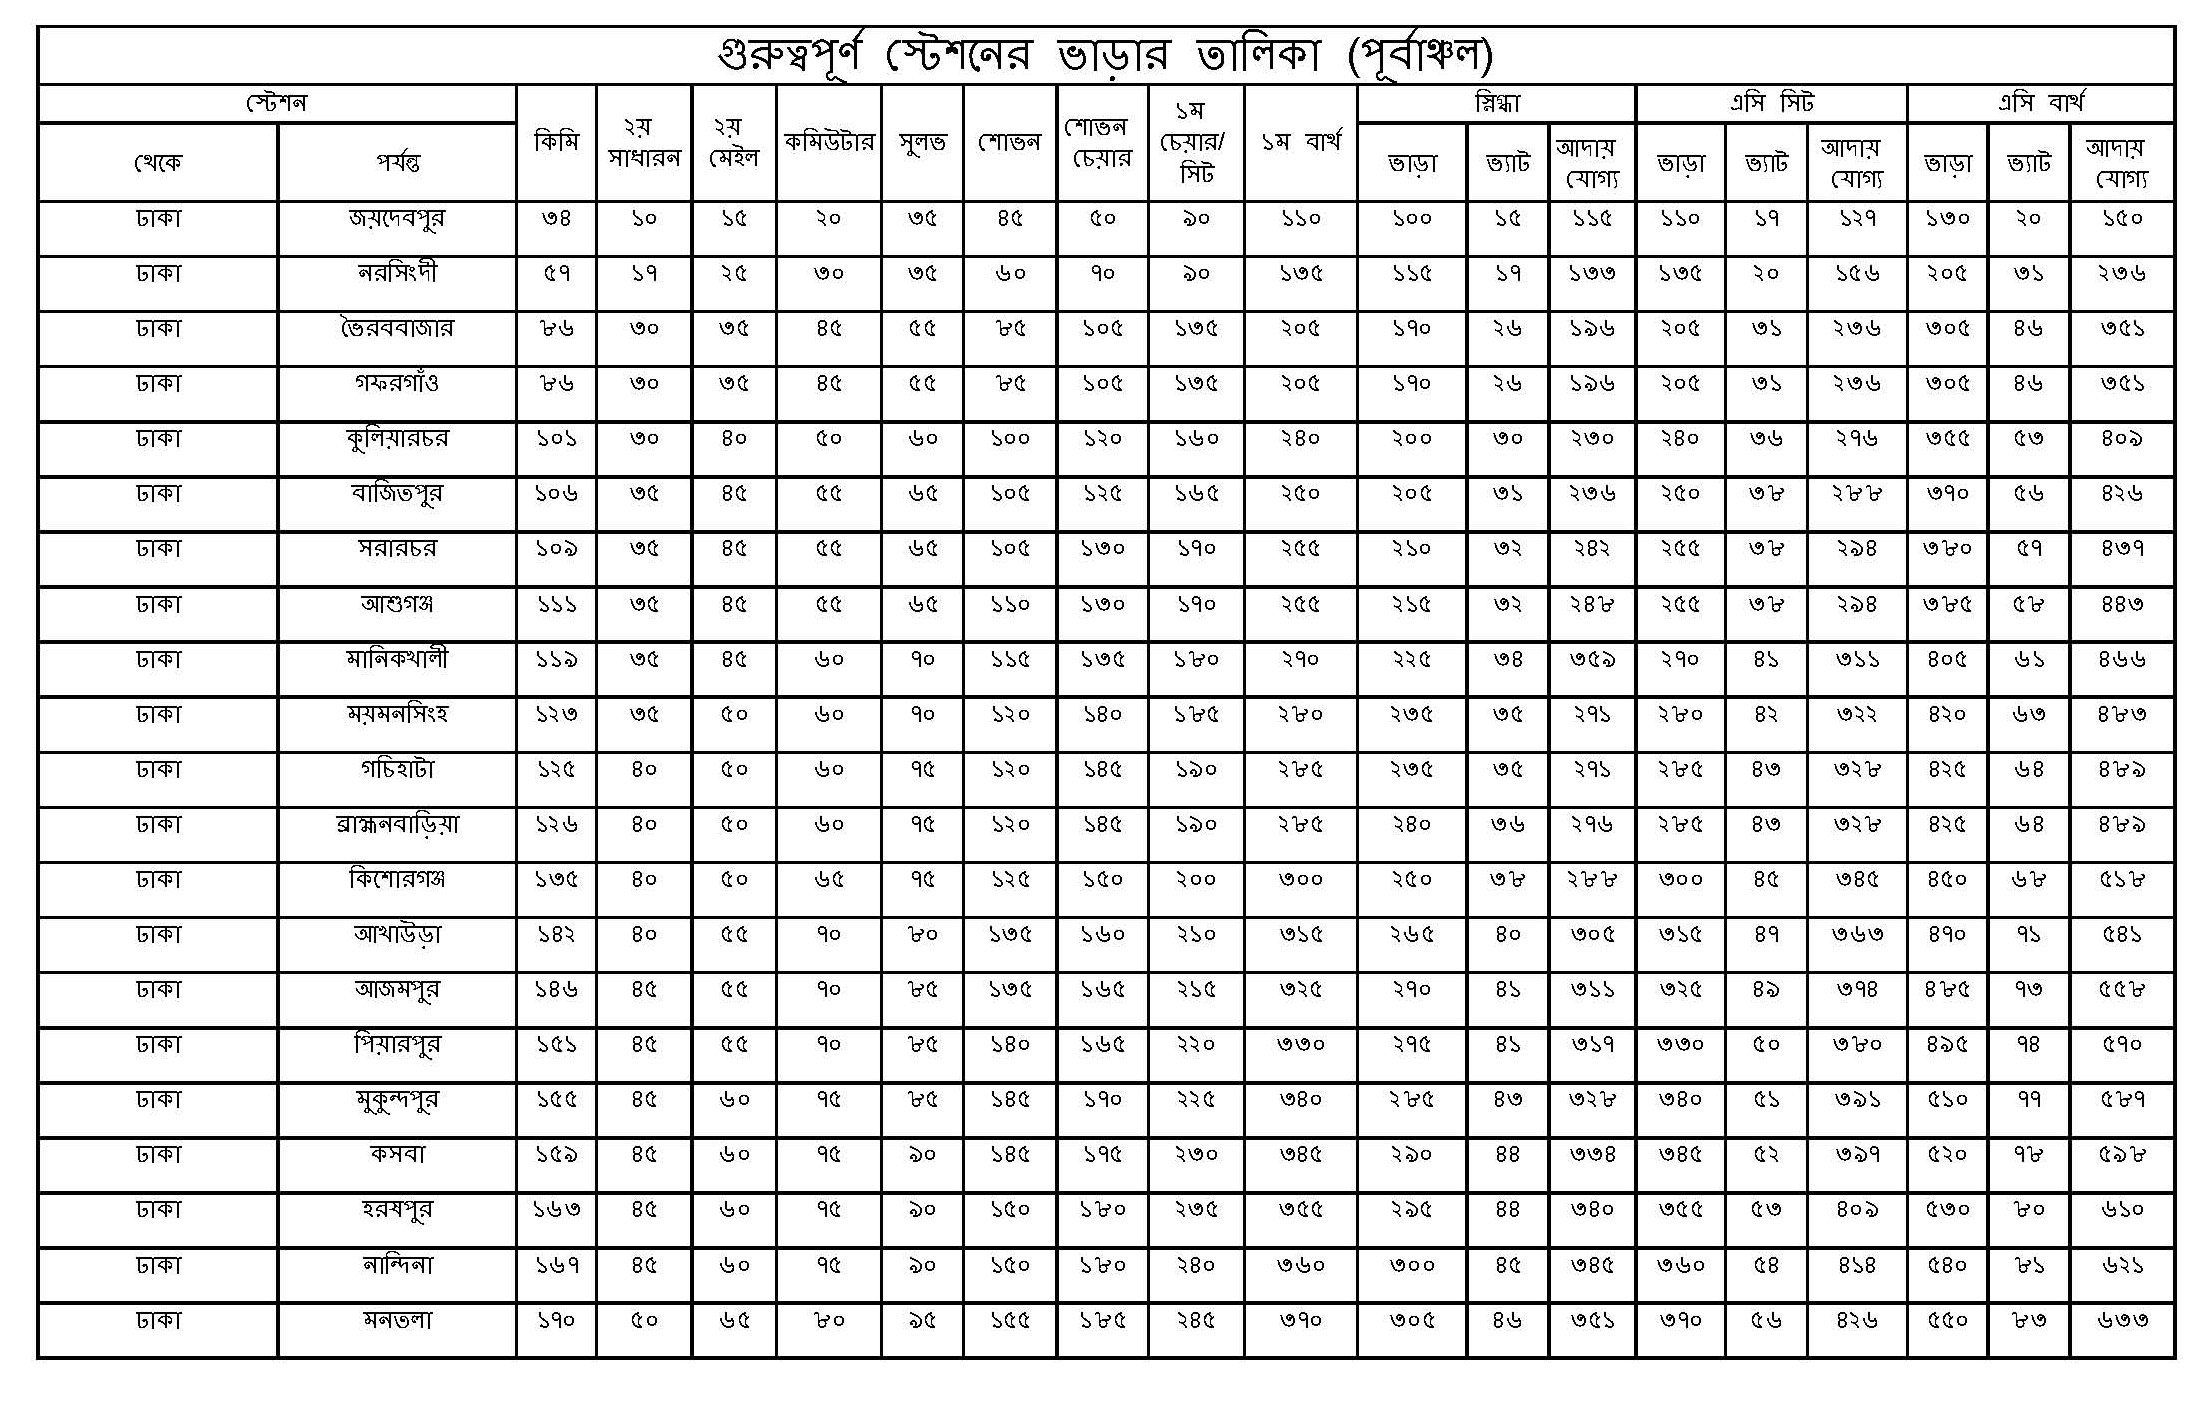 Railway Fare rate in Bangladesh